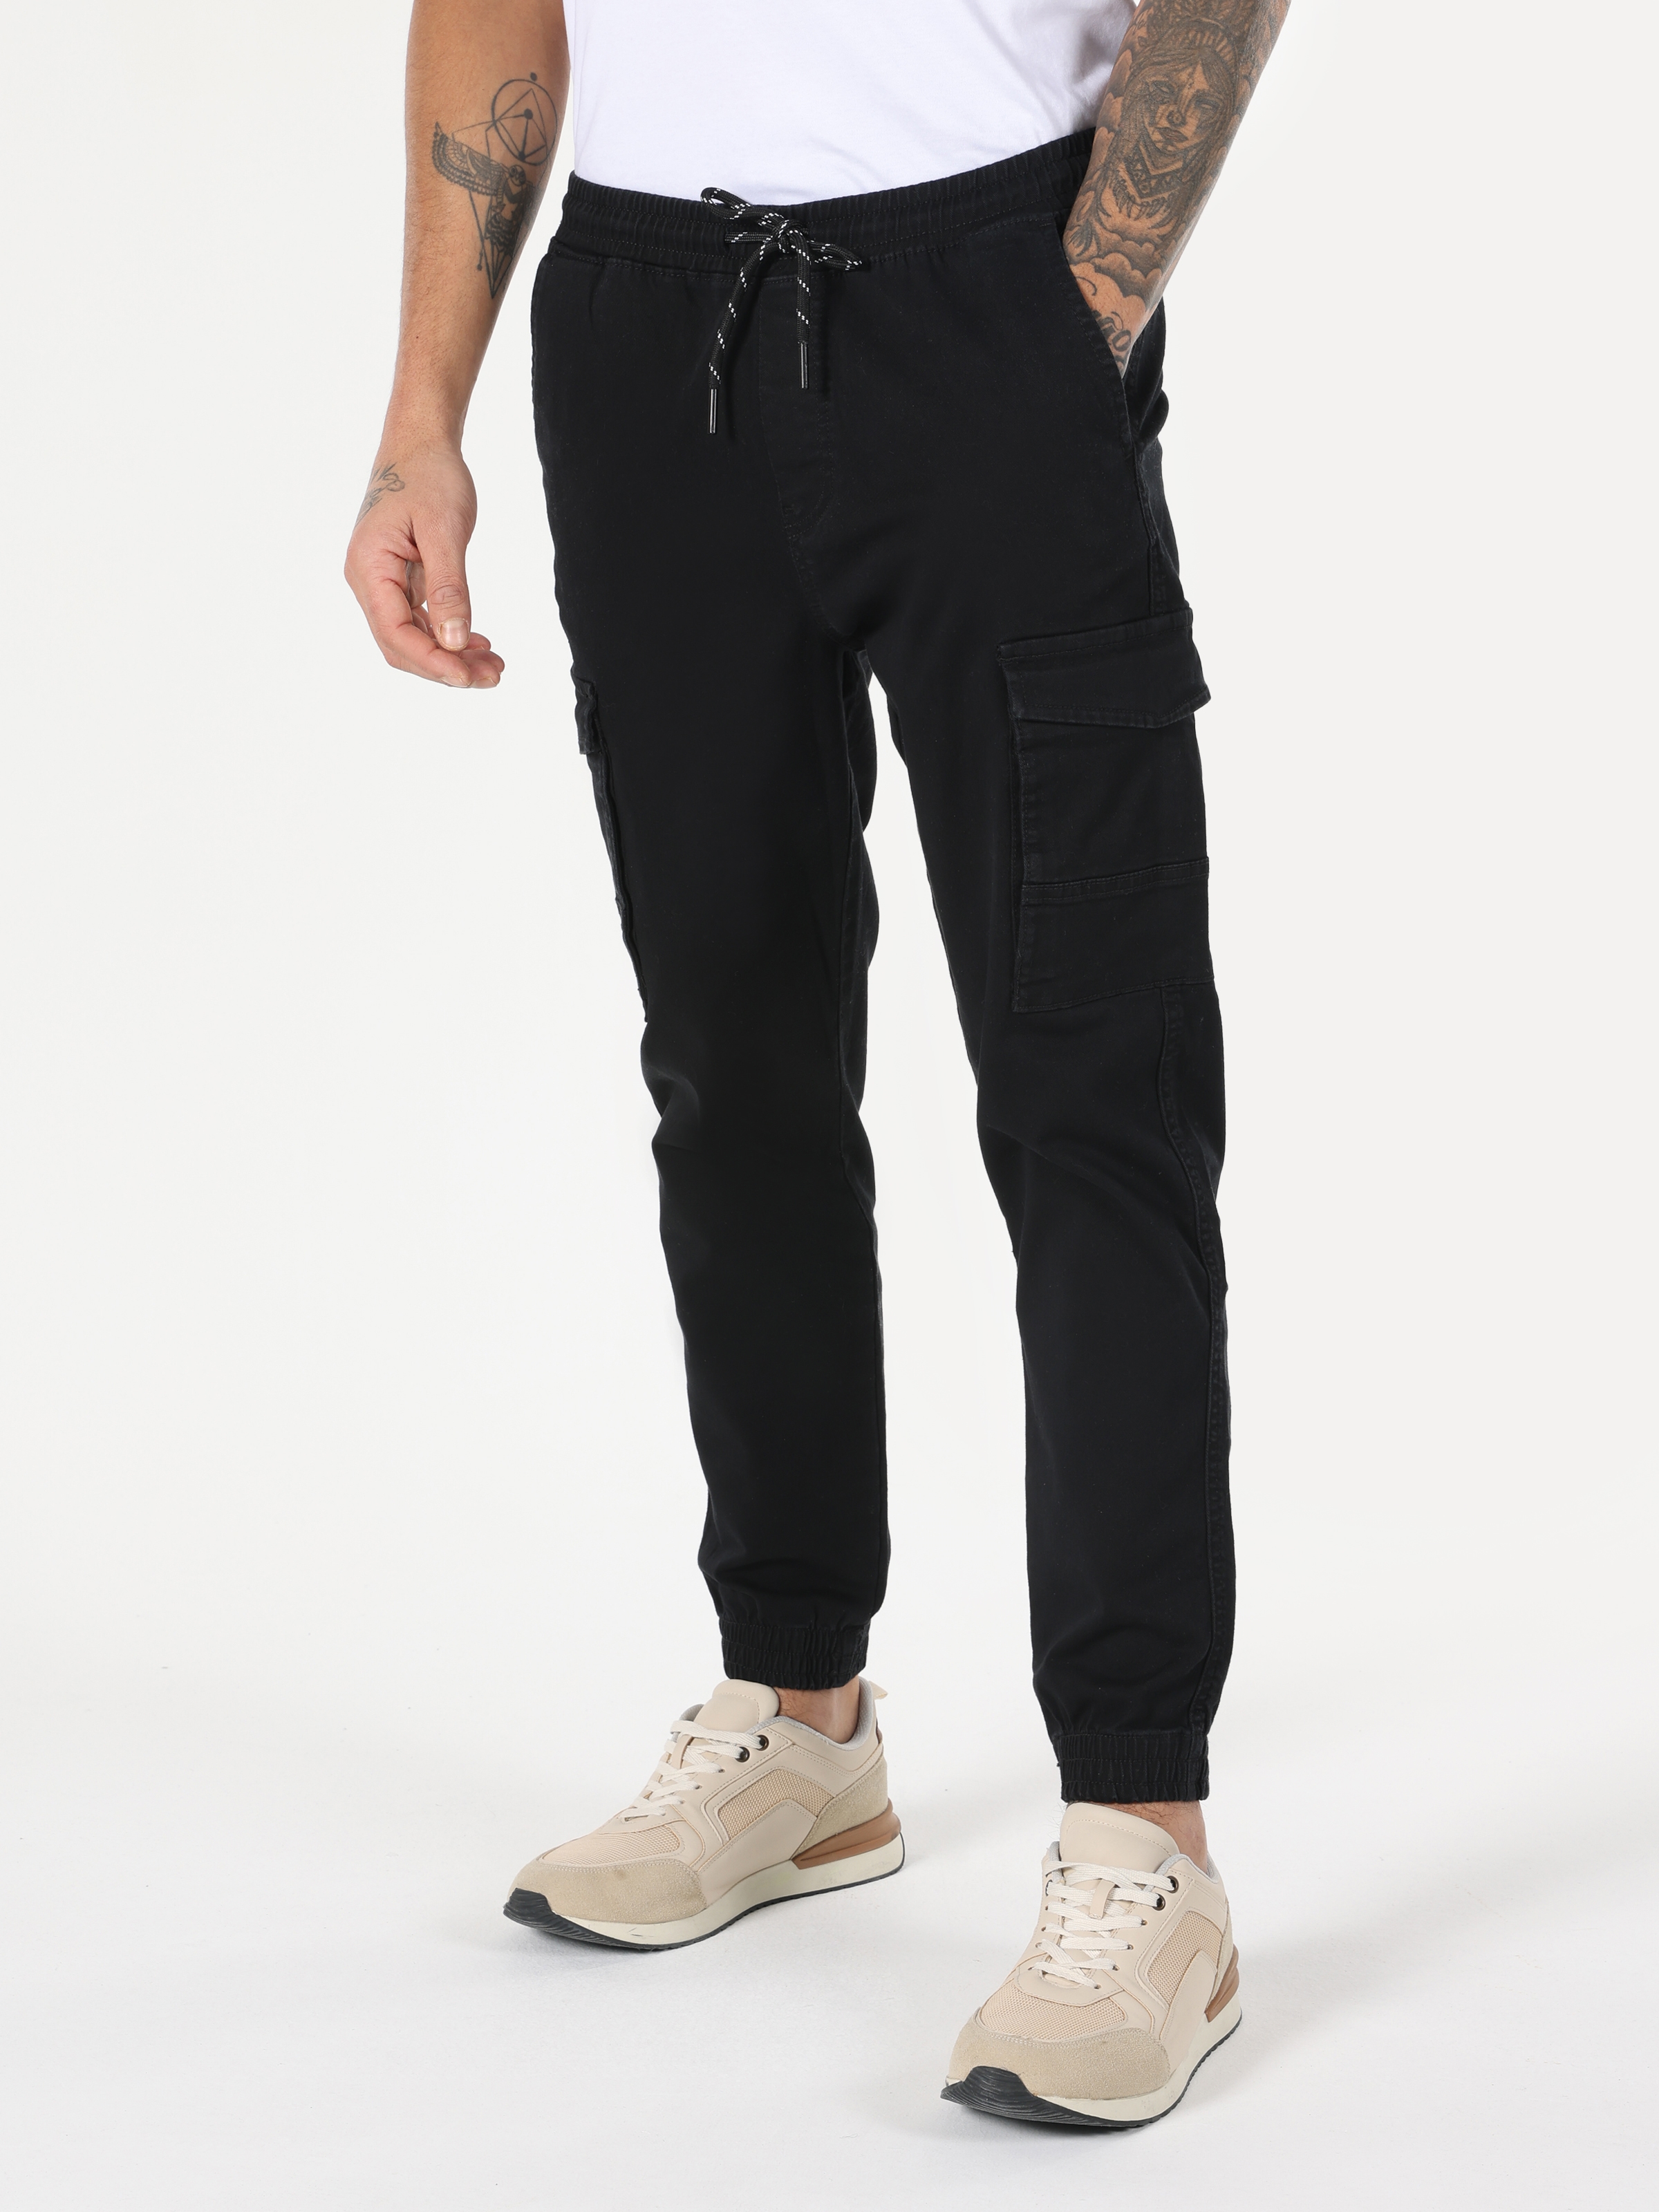 Afficher les détails de Pantalon Homme Noir Coupe Slim Taille Moyenne Poche Cargo Jambe Élastique